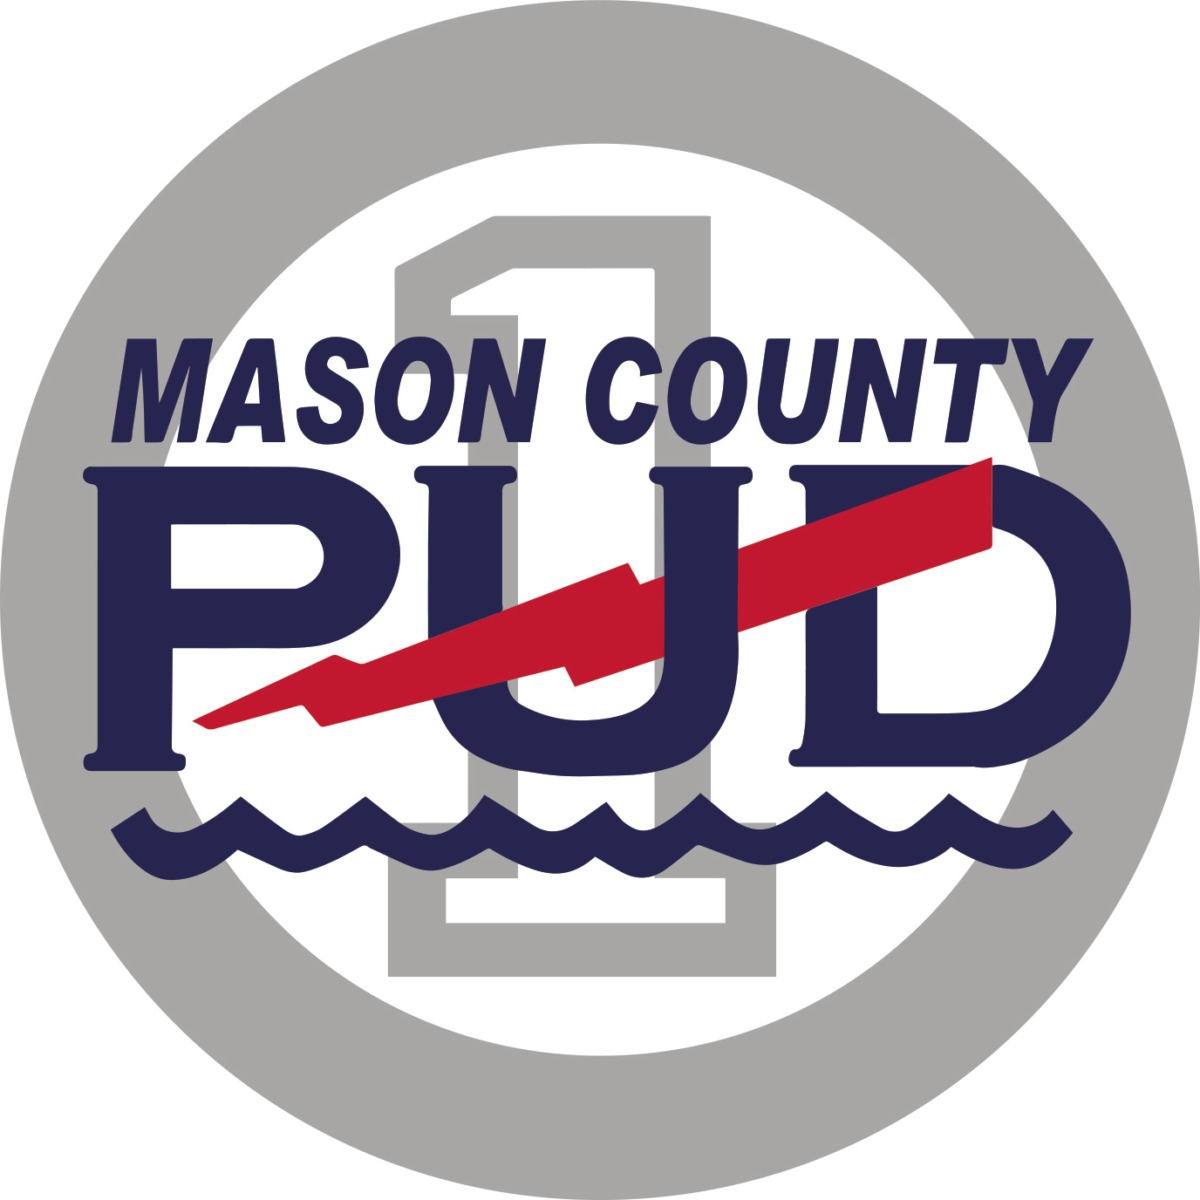 Mason County PUD logo